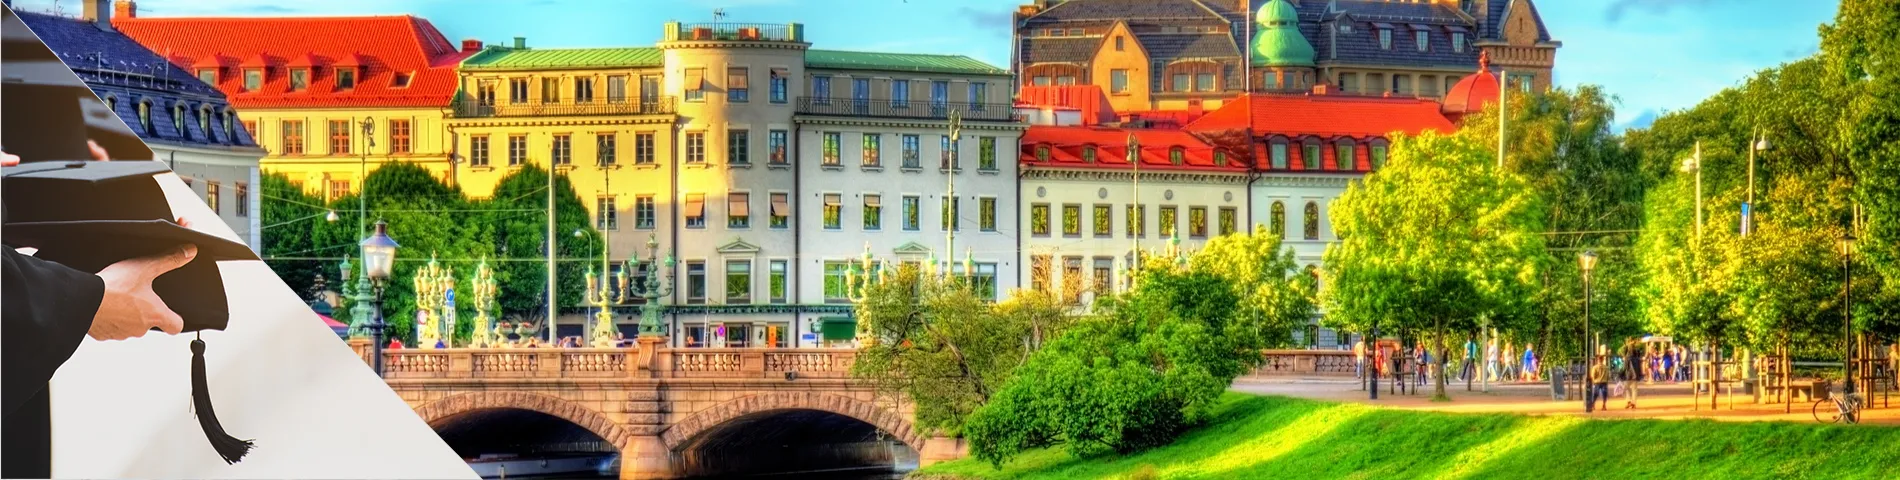 Gothenburg - University